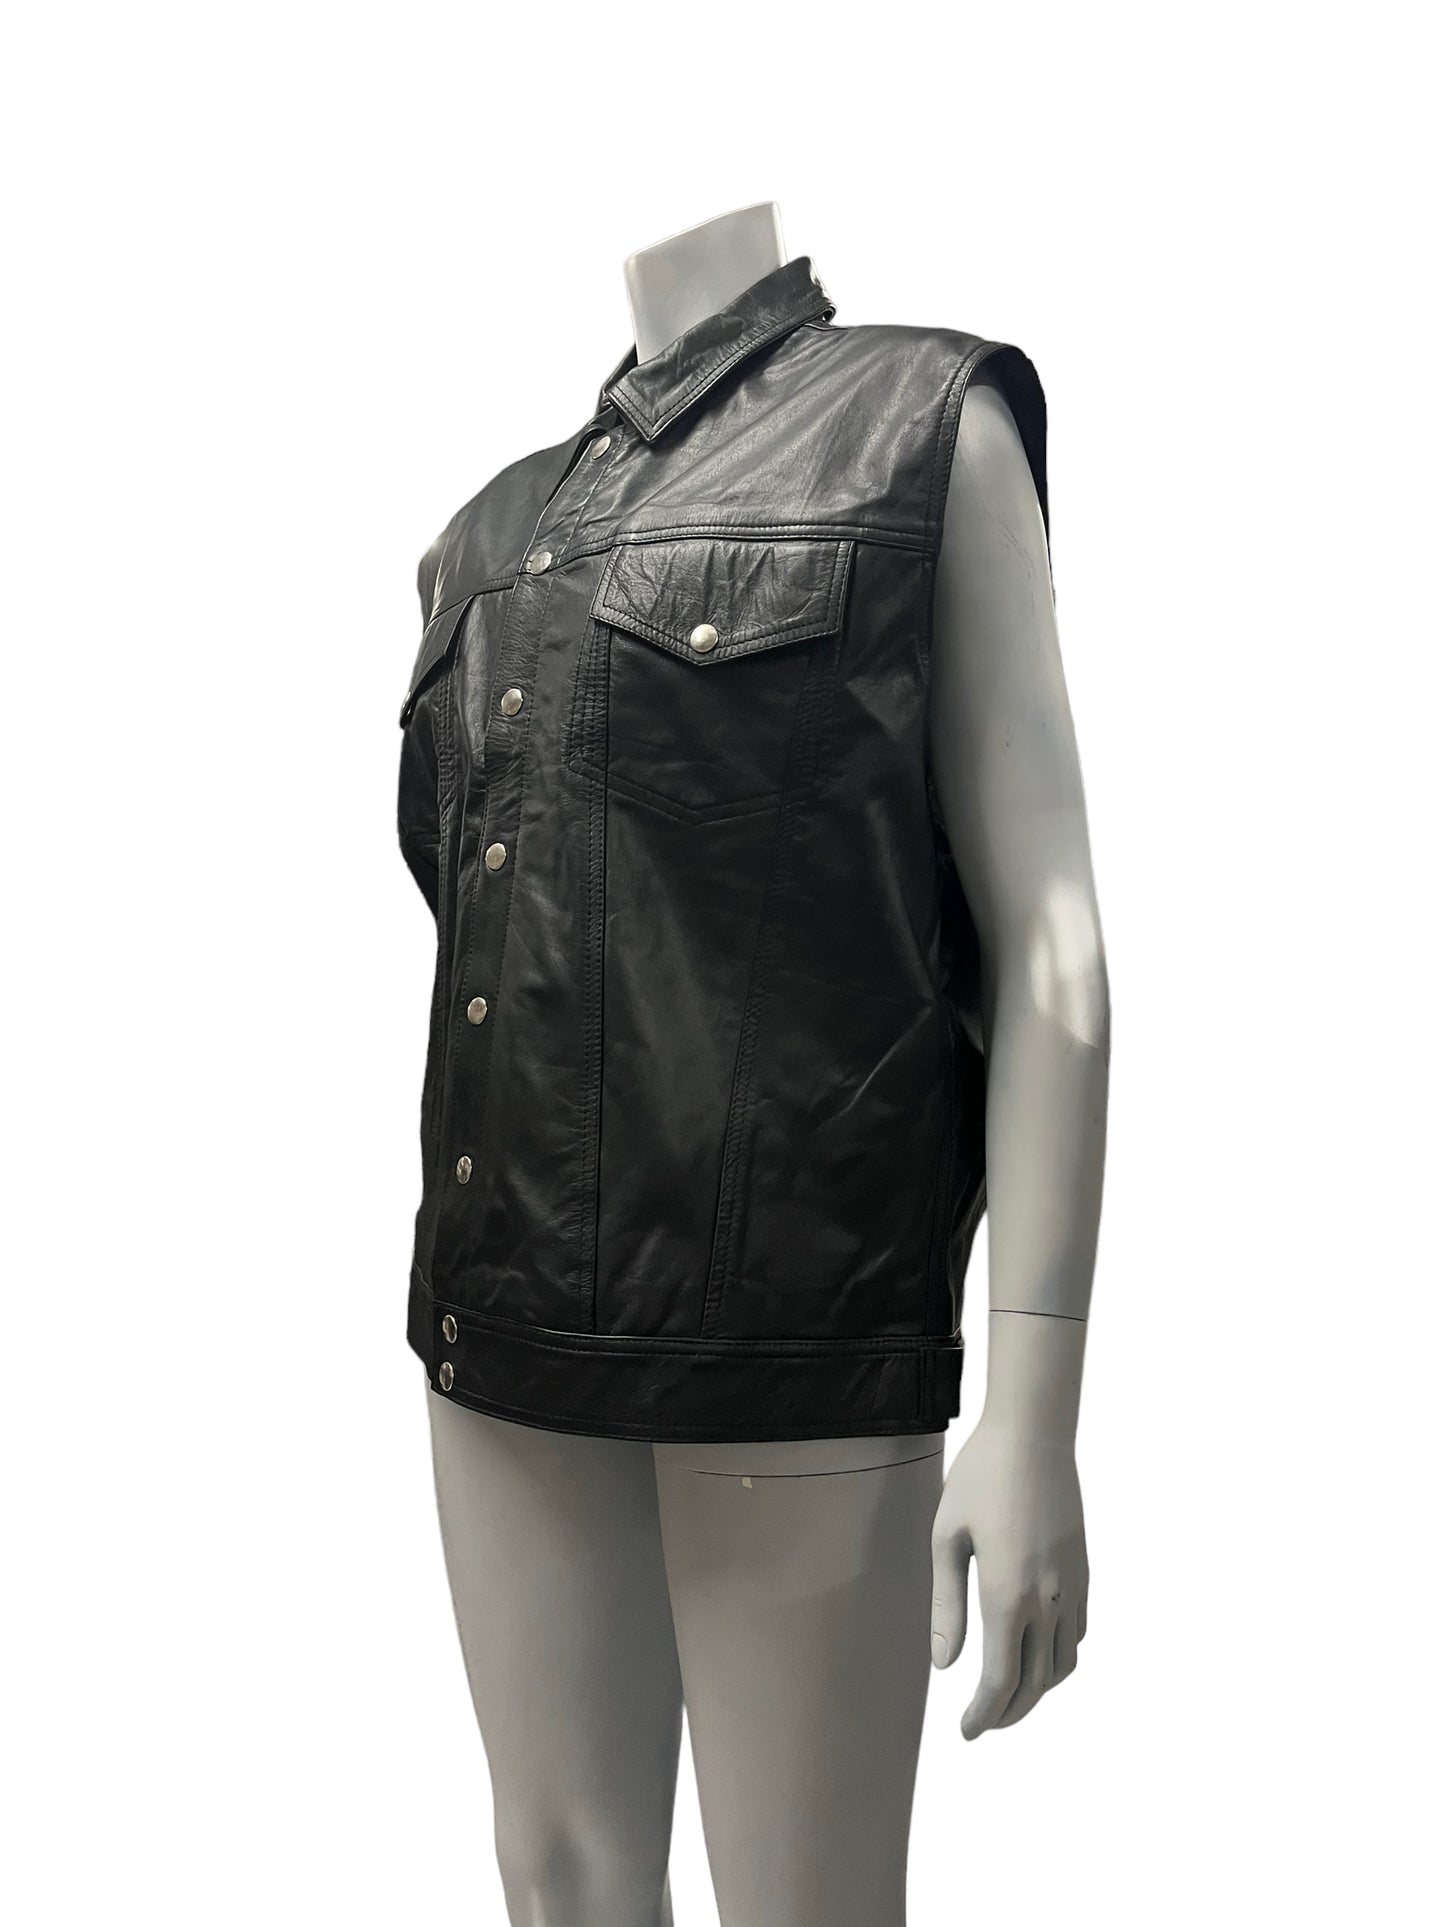 Fashion World - LL151 - Black Sleeveless Leather Jacket